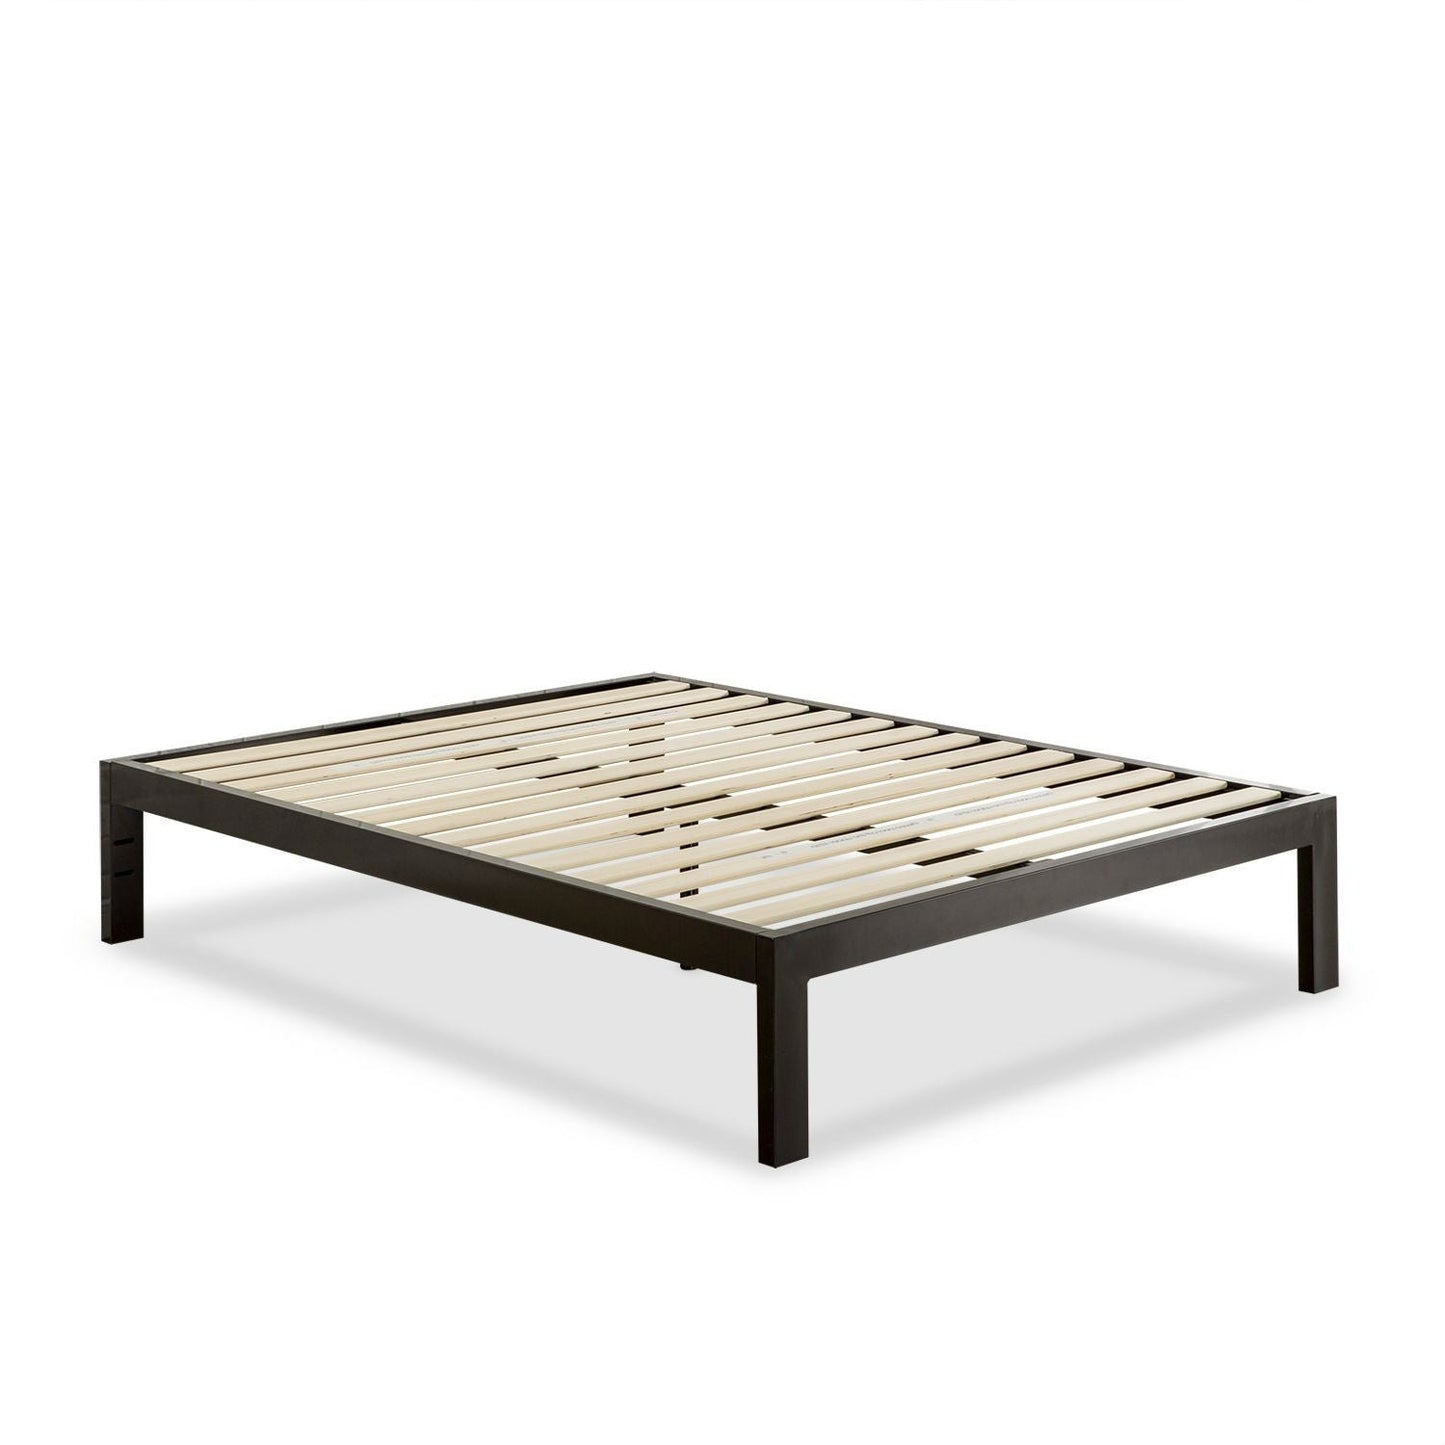 Bedroom > Bed Frames > Platform Beds - Queen Modern Black Metal Platform Bed Frame With Wood Slats